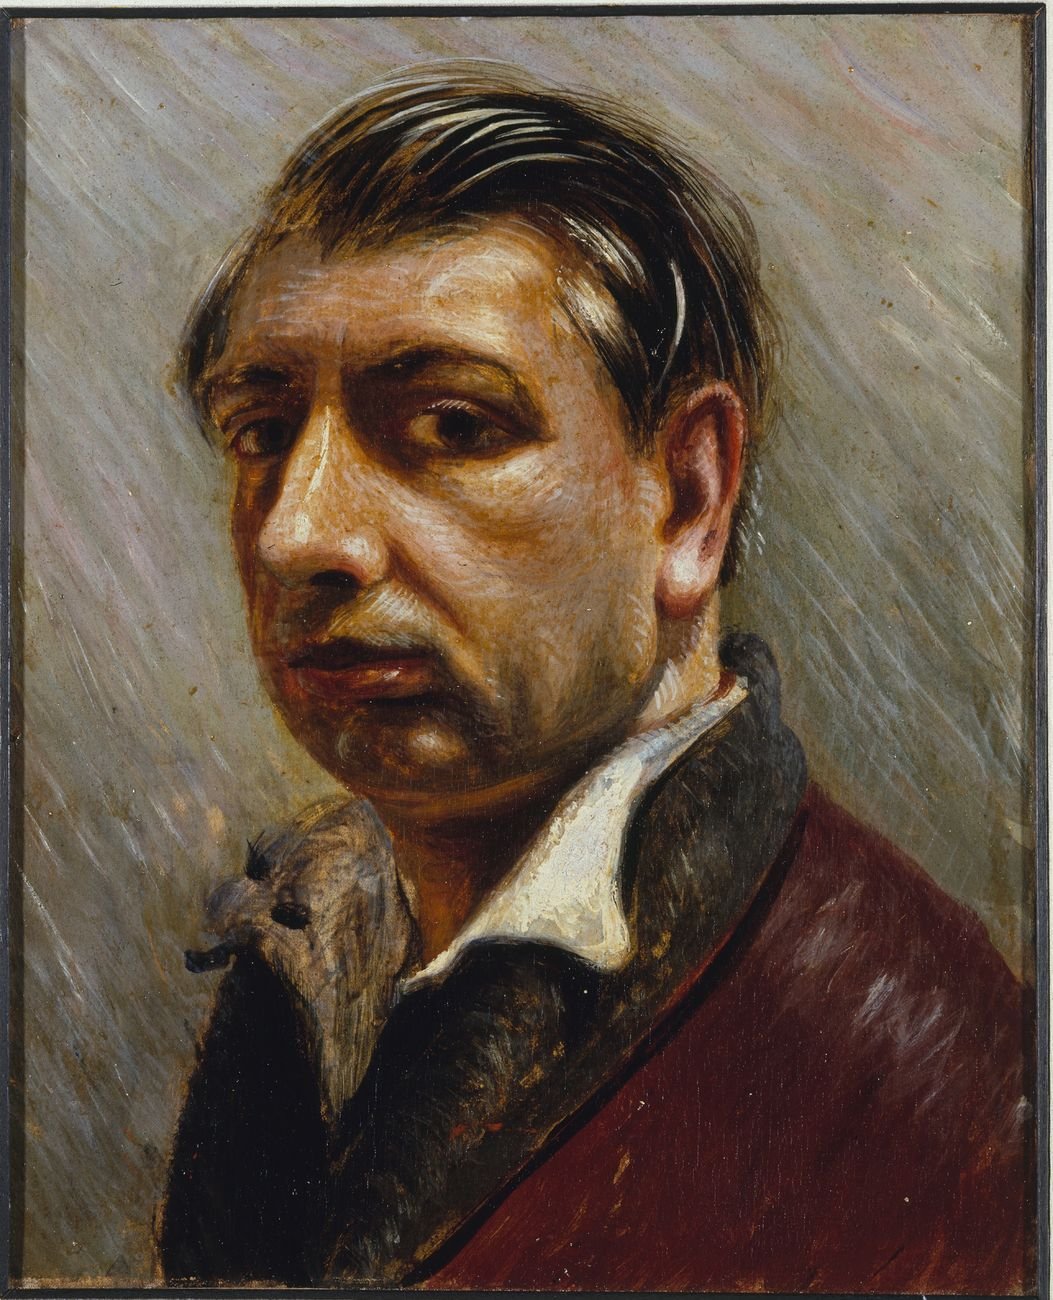 Giorgio de Chirico, Autoritratto, 1931. Collezione privata, Bergamo. Photo Studio Fotografico Luca Carrà © Giorgio de Chirico by SIAE 2017